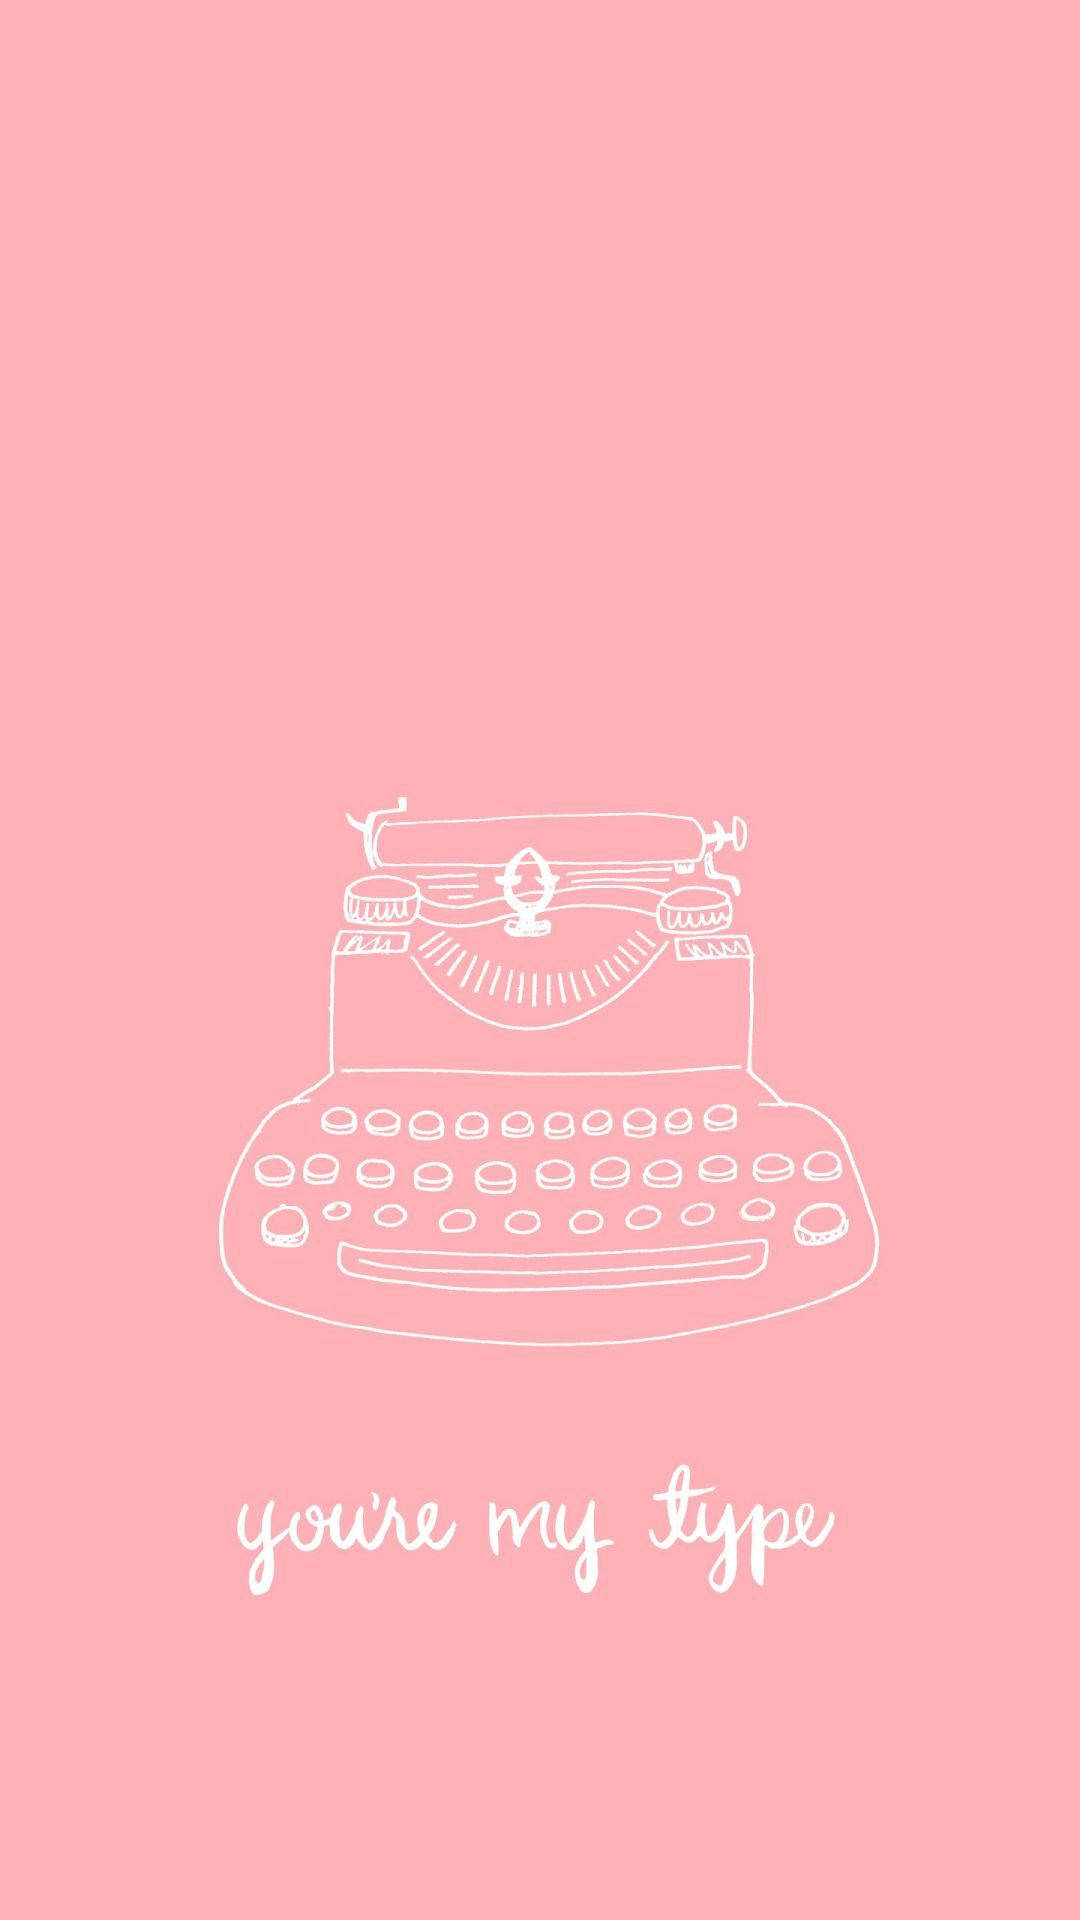 Typewriter Plain Pink Background